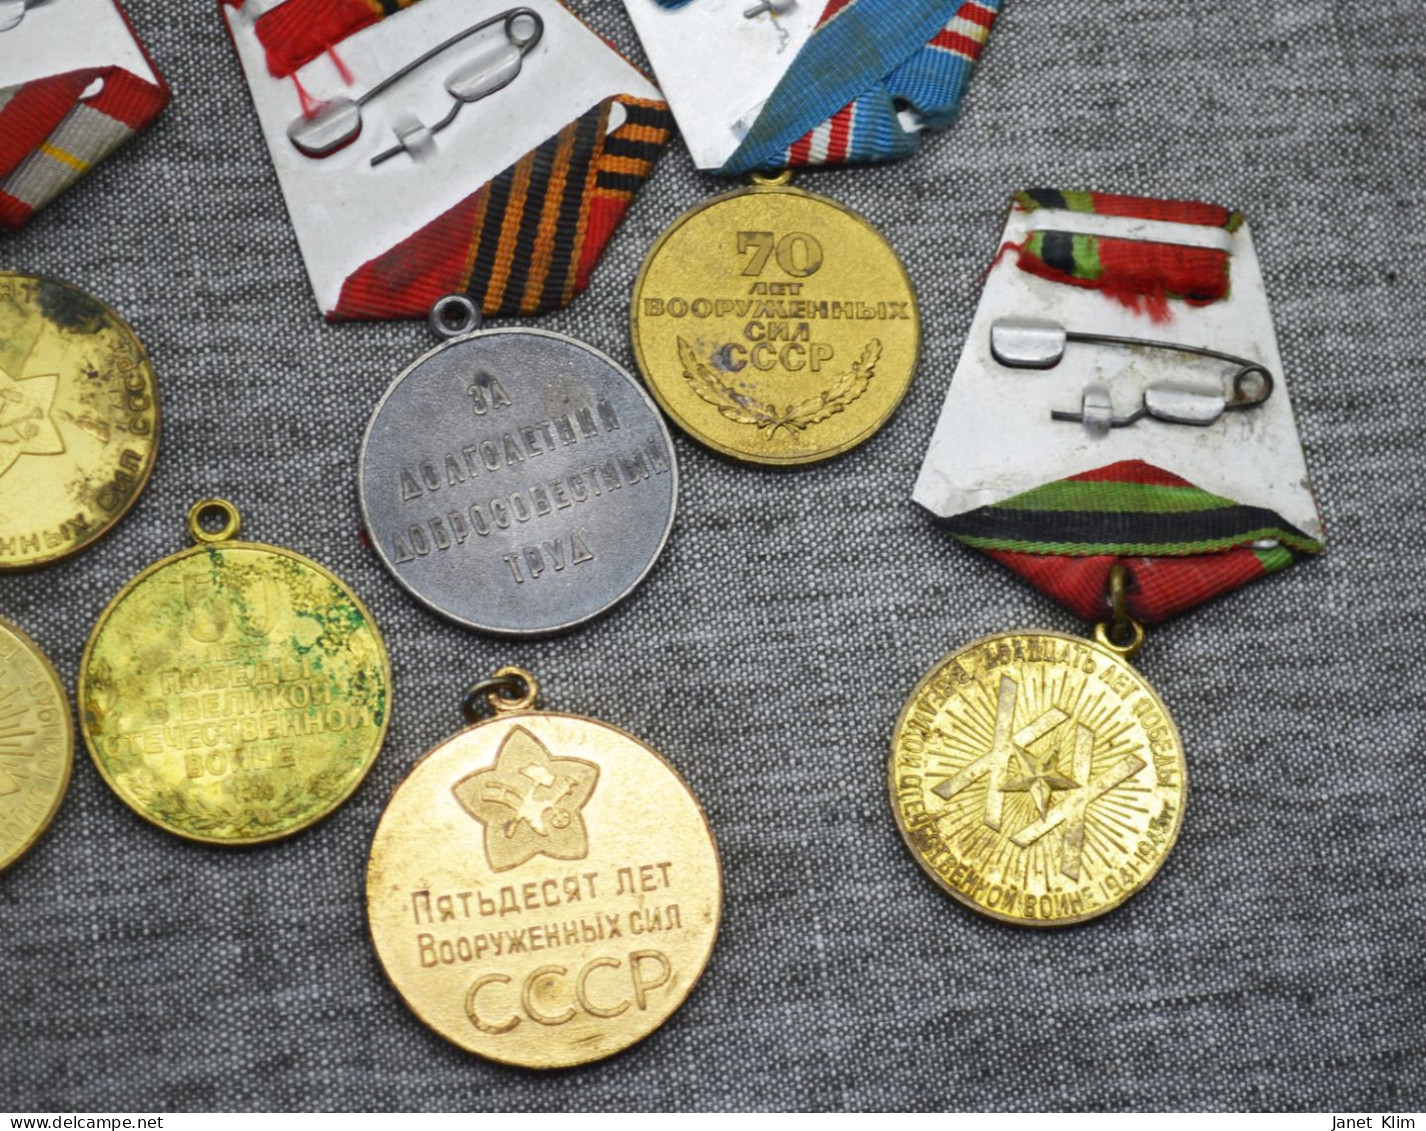 Vintage Lot ussr medals